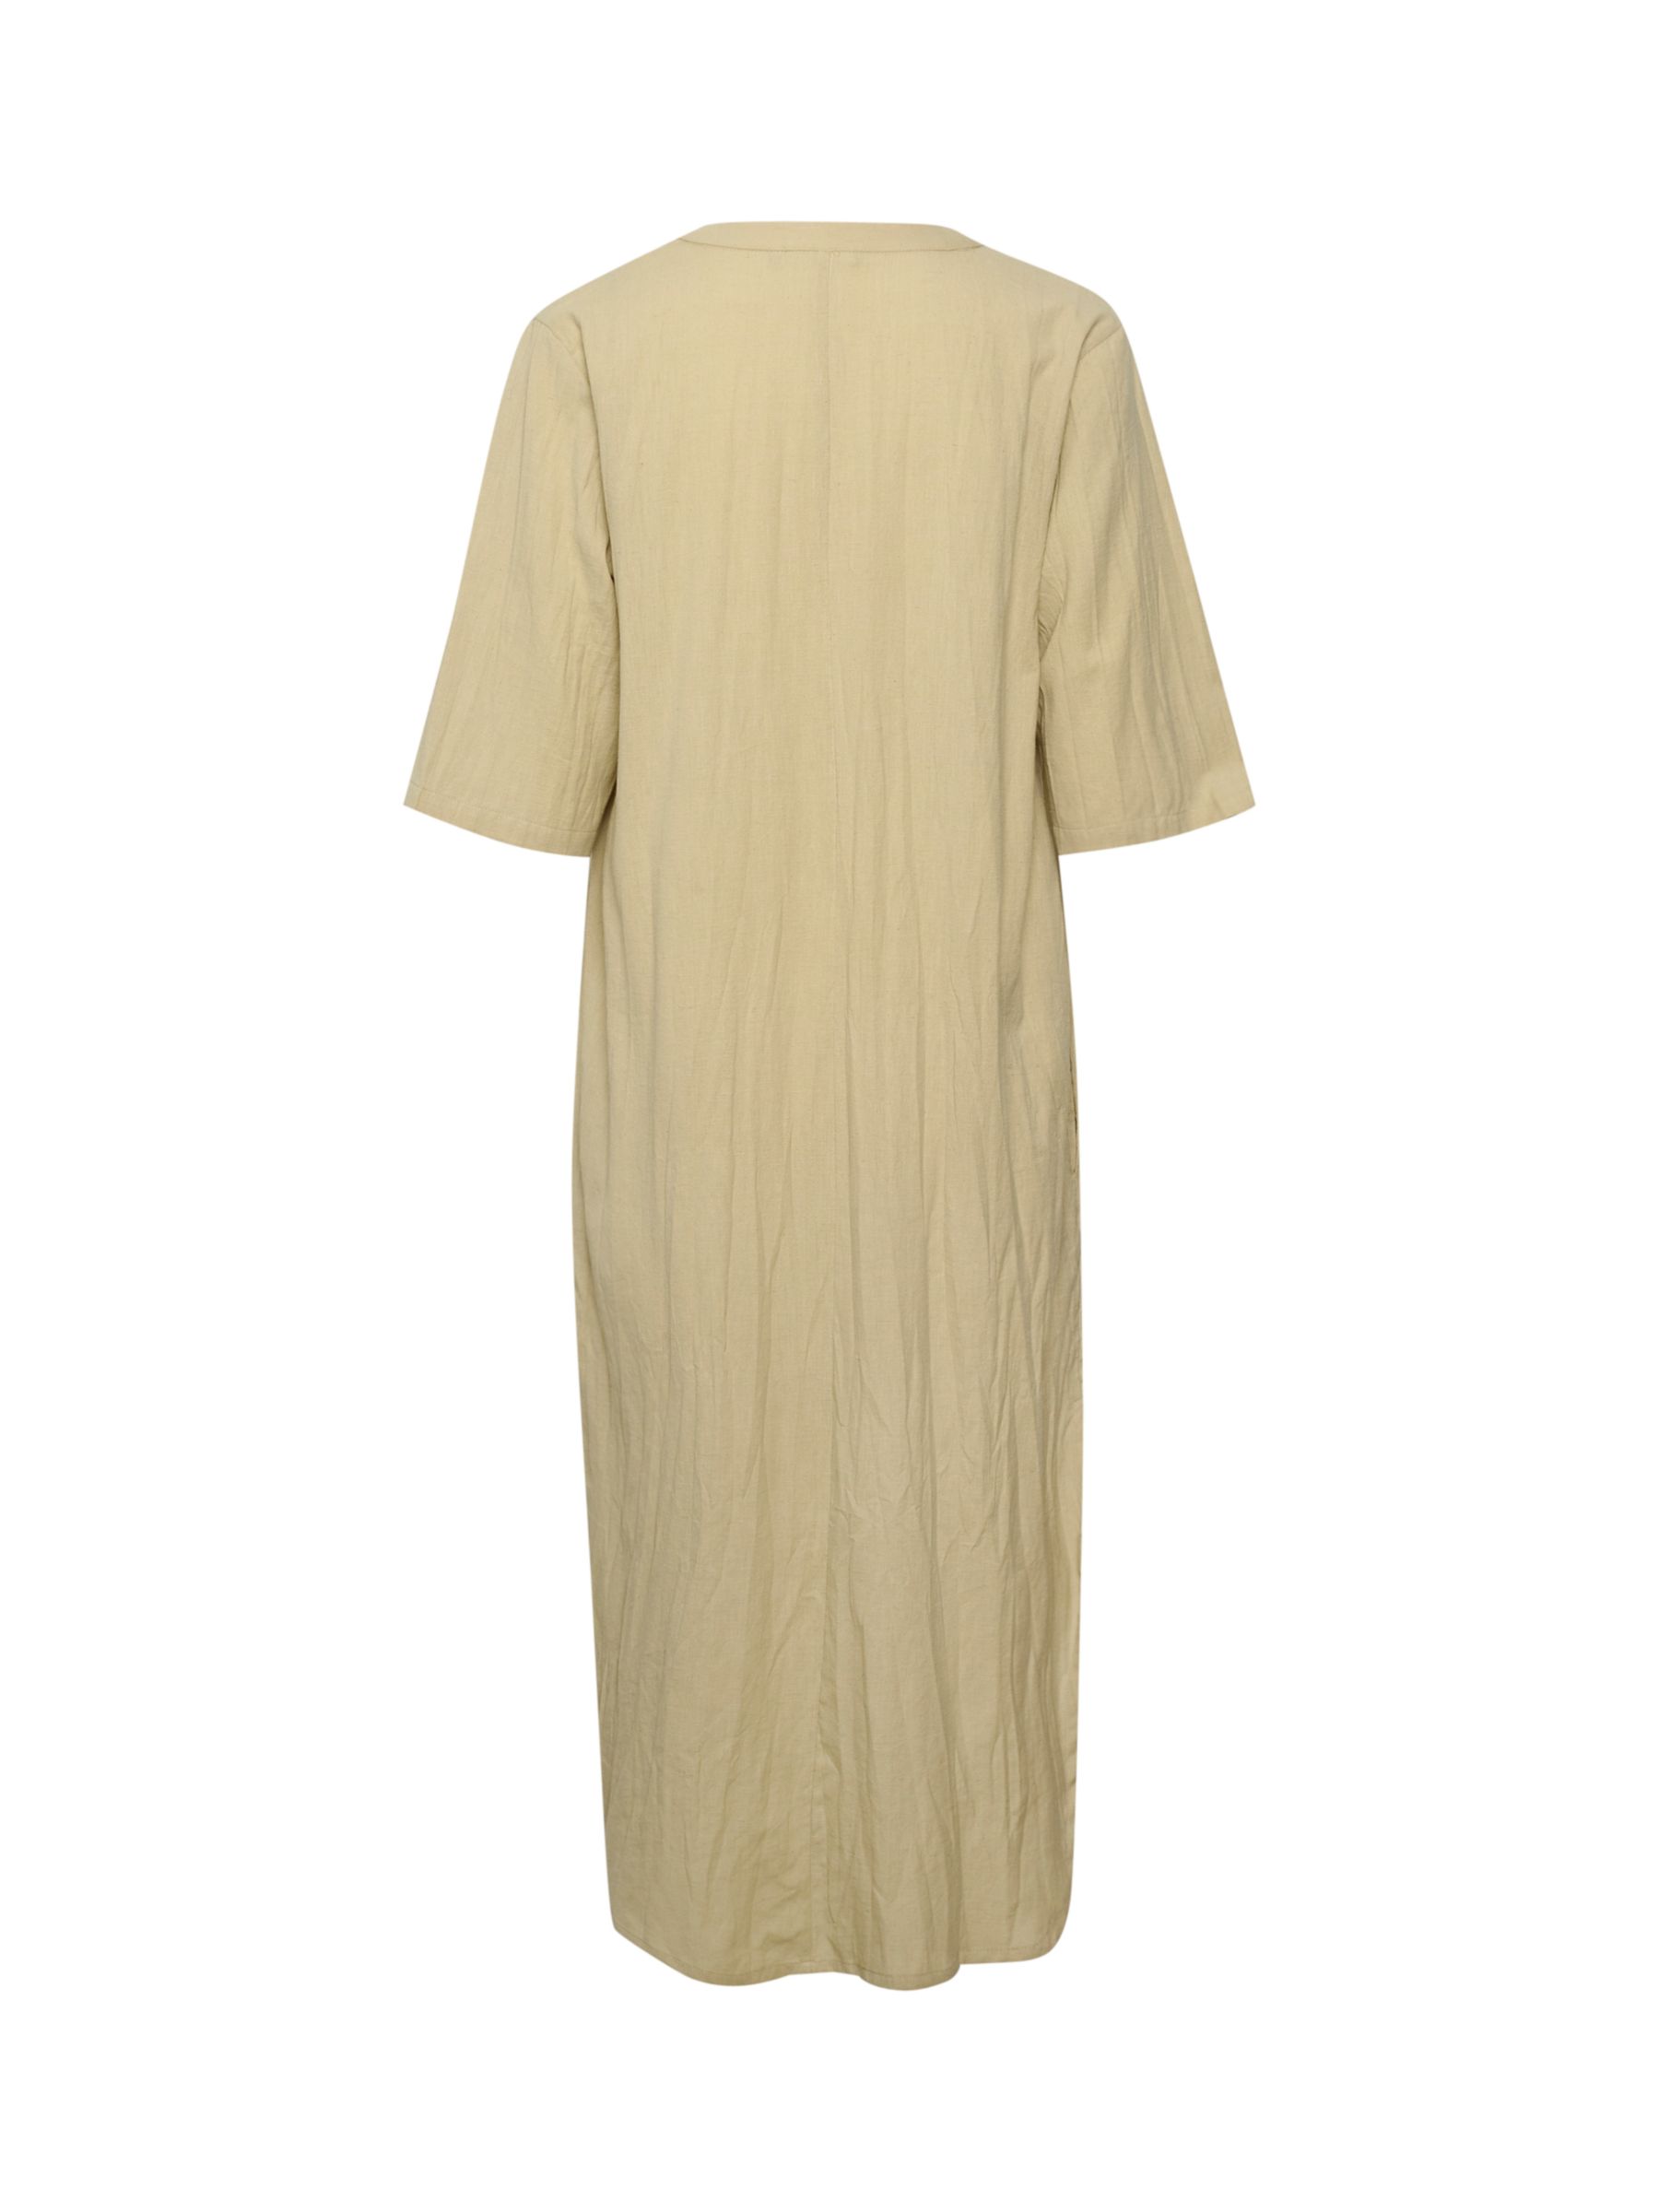 KAFFE Majse Cotton Linen Blend Kaftan Dress, Feather Grey, 10